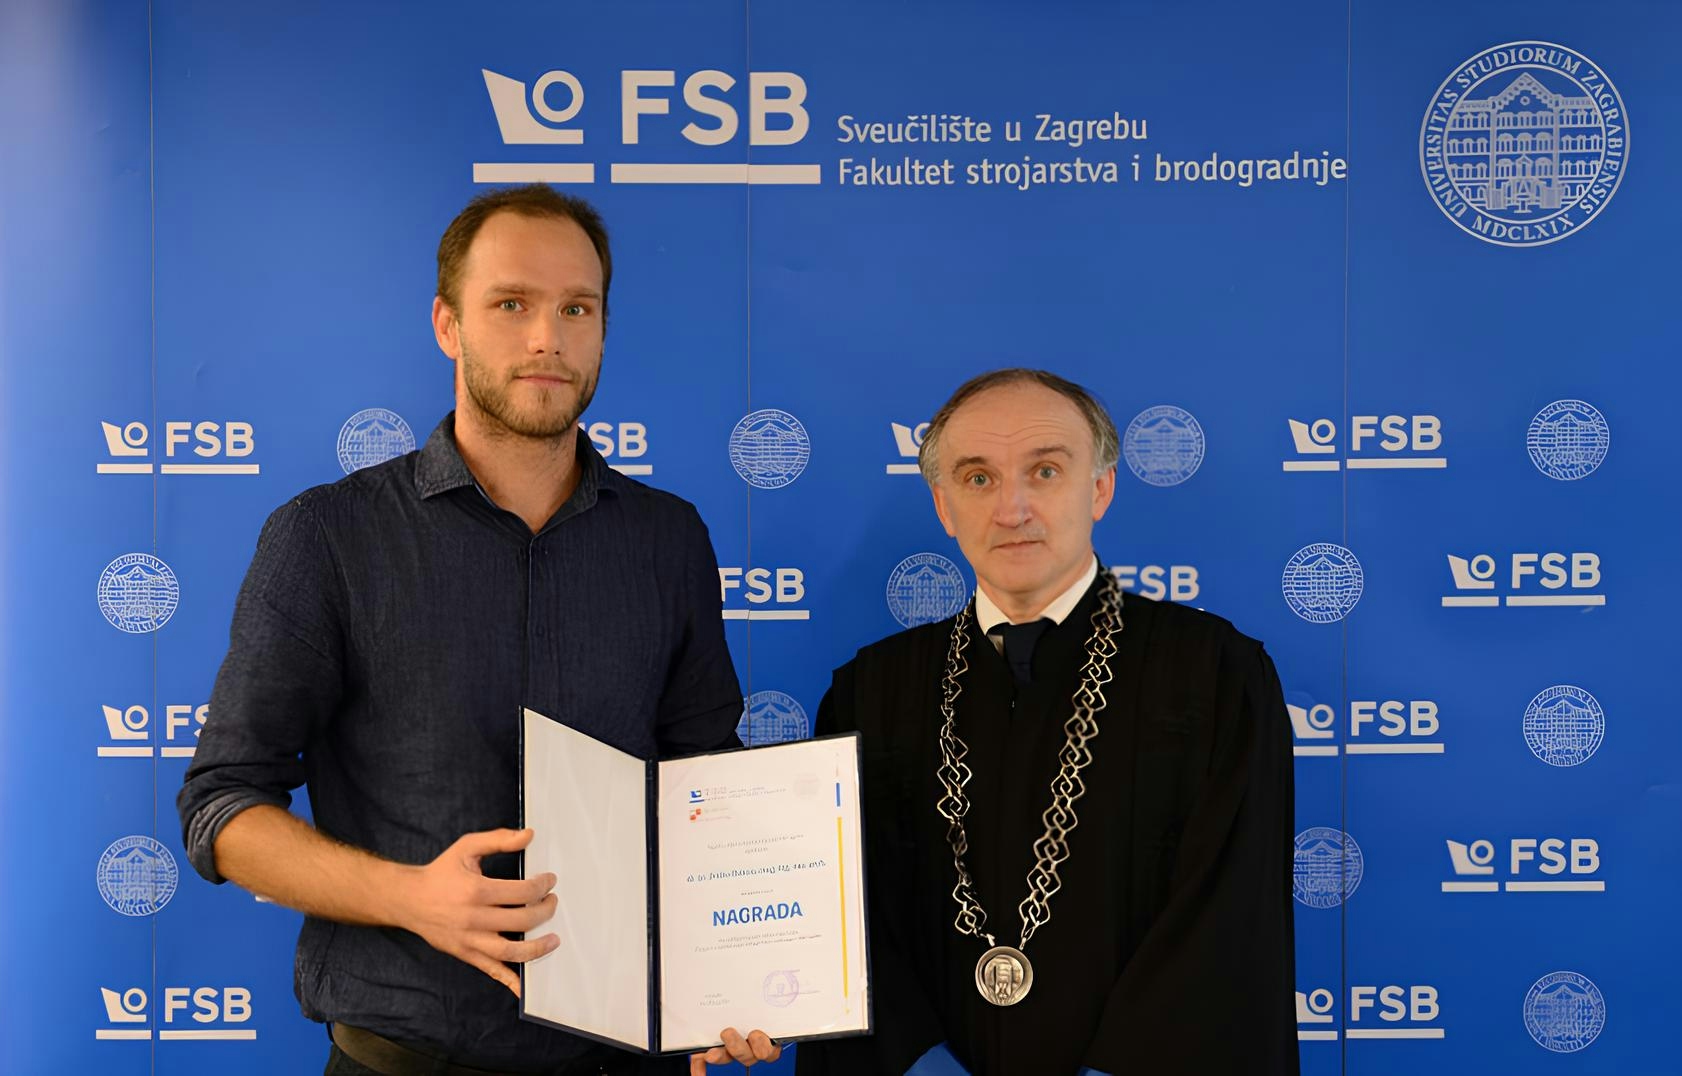 Nagrada za najbolji doktorski rad na FSB-u – doc. dr. sc. Andro Bakica